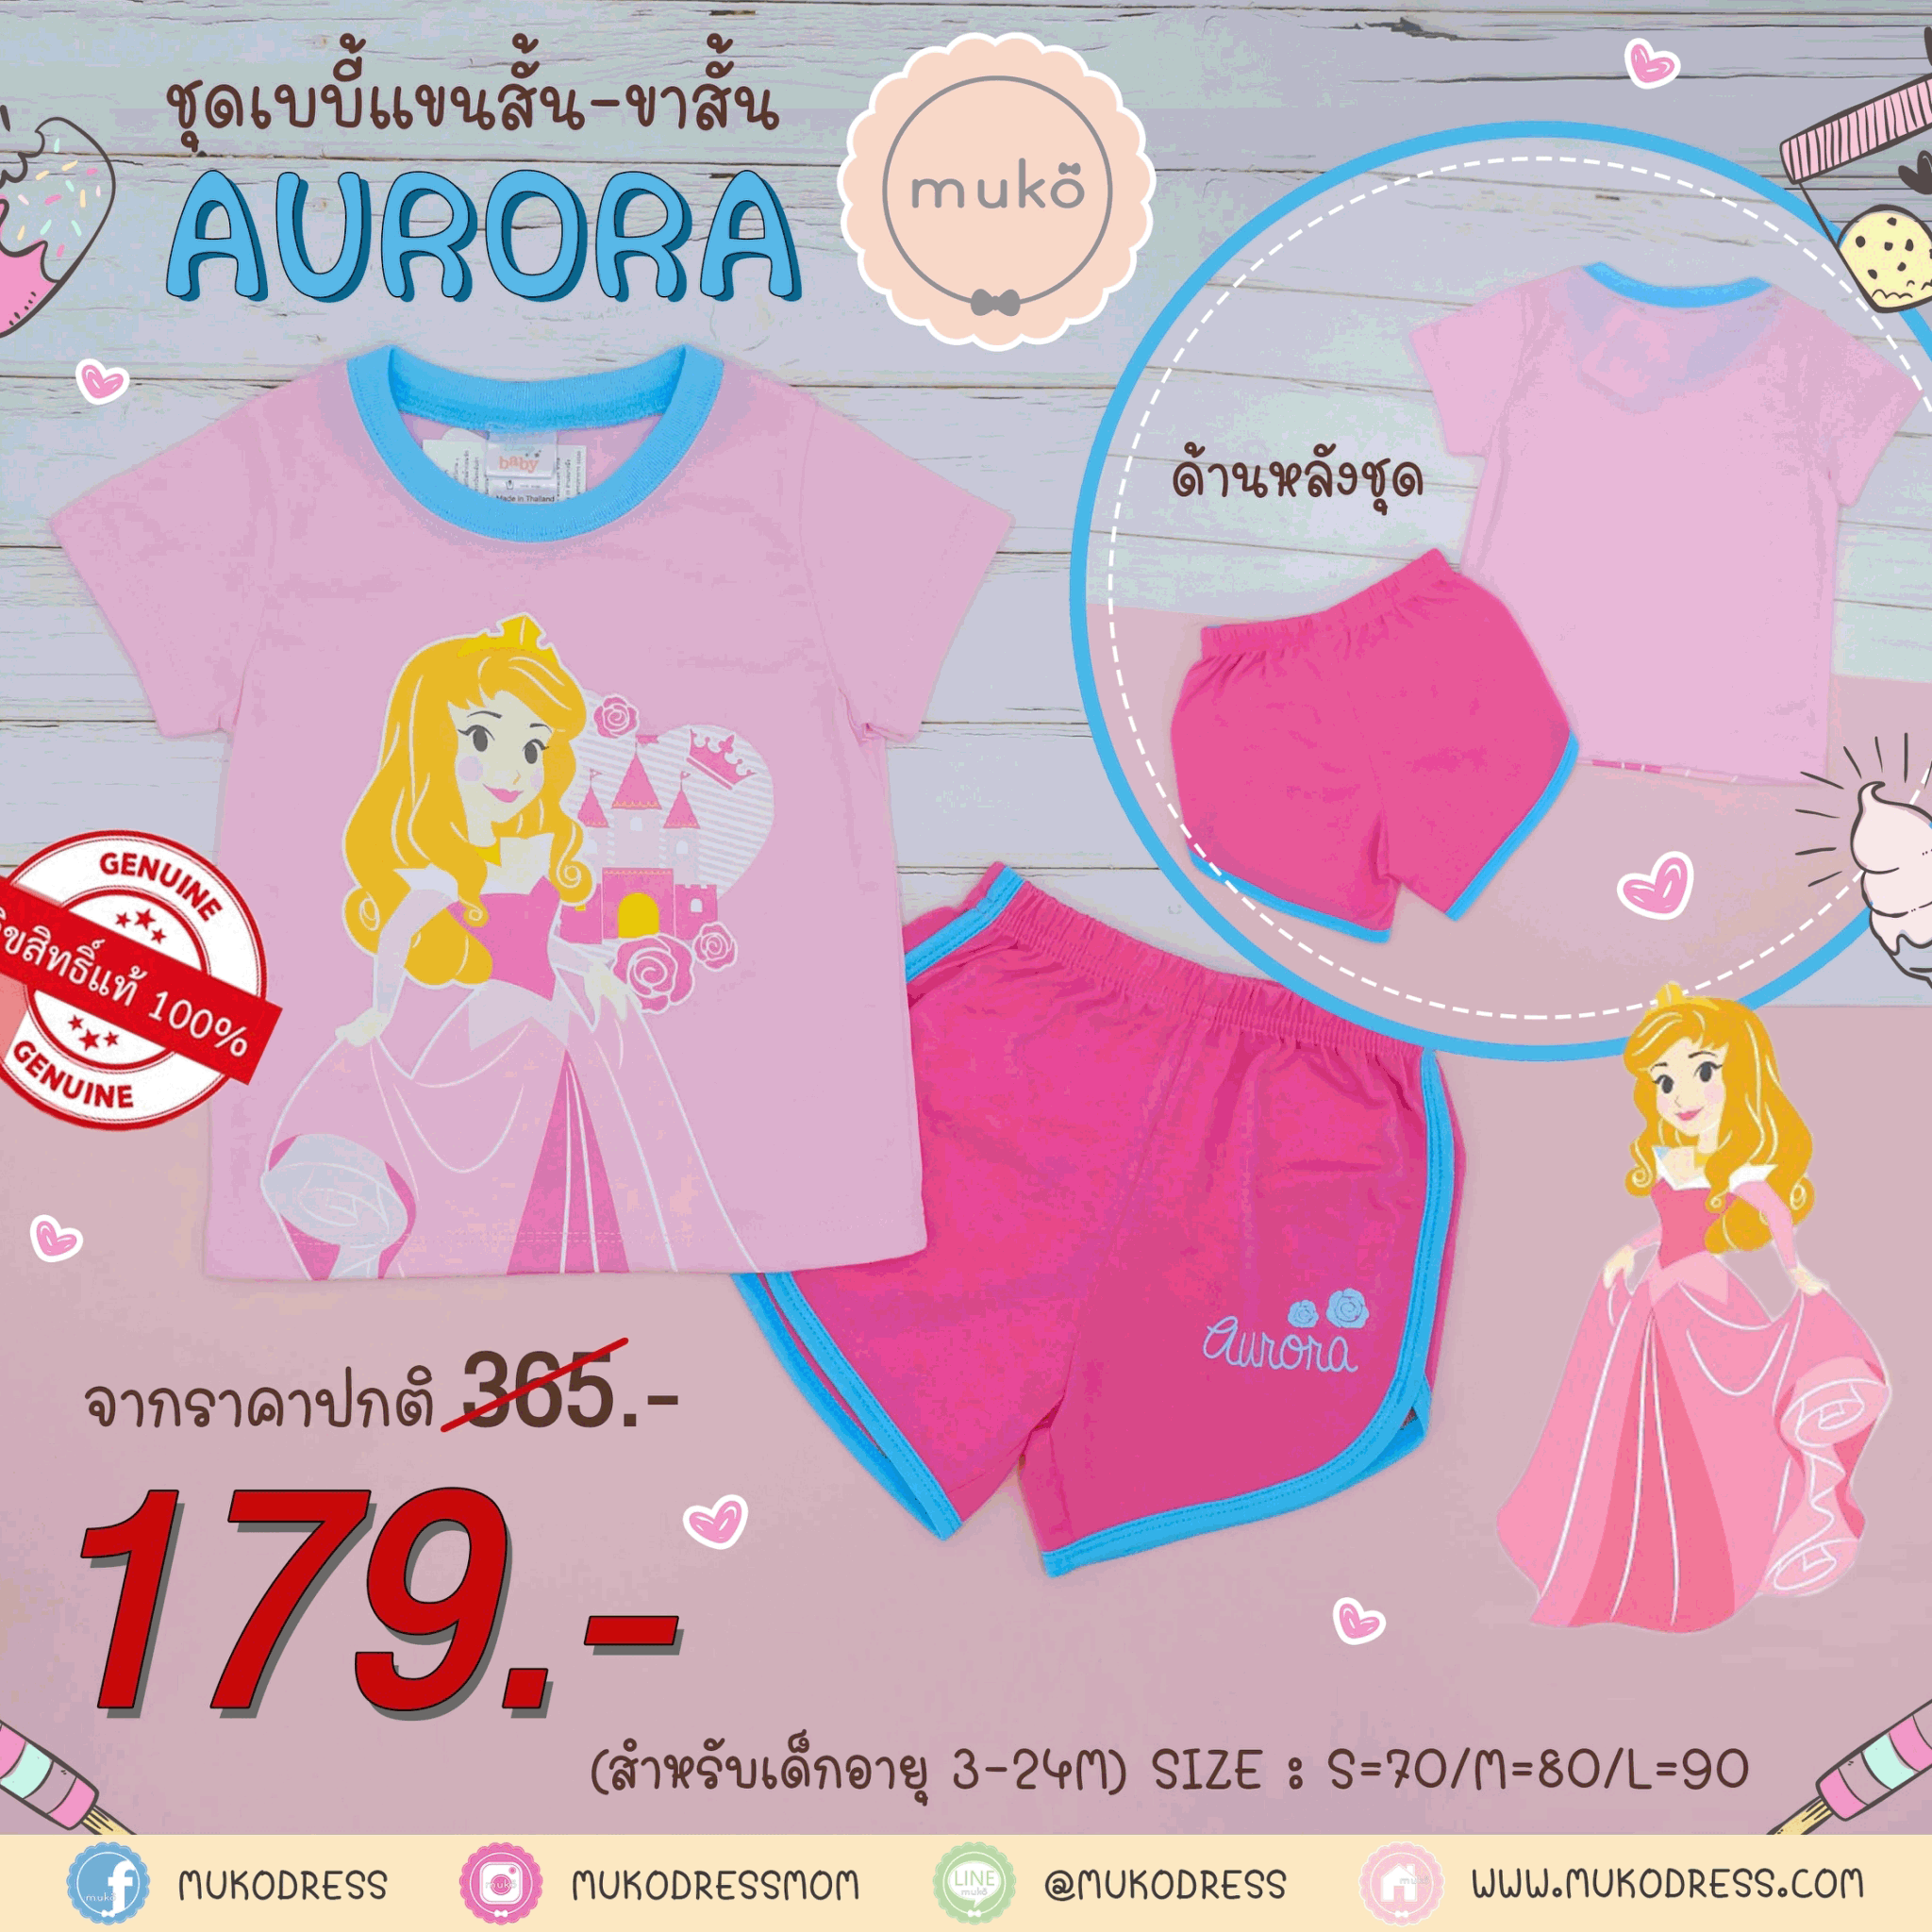 ชุดเบบี้ 3-6 เดือน แขนสั้น-ขาสั้น (S=70) DPC017-01-L-Pink S ลายเจ้าหญิงออโรร่า Aurora